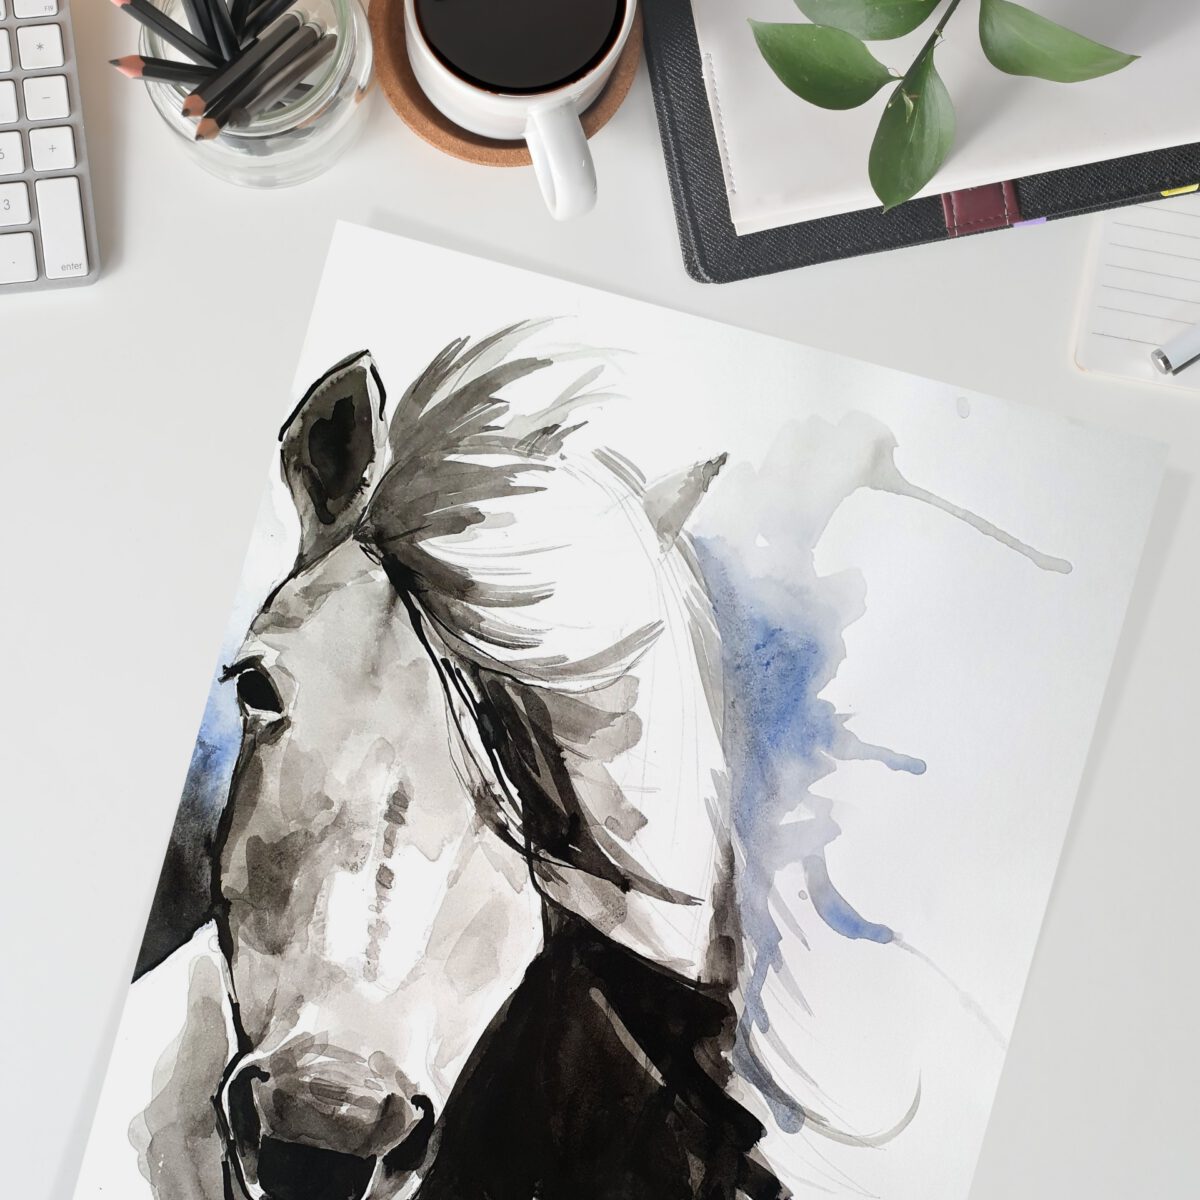 סוס אצילי ציור מקורי ציור בעלי חיים ציורי חיות אמנות אמנים עבודת יד צבעי מים אקוורל אנה רדיס anna radis